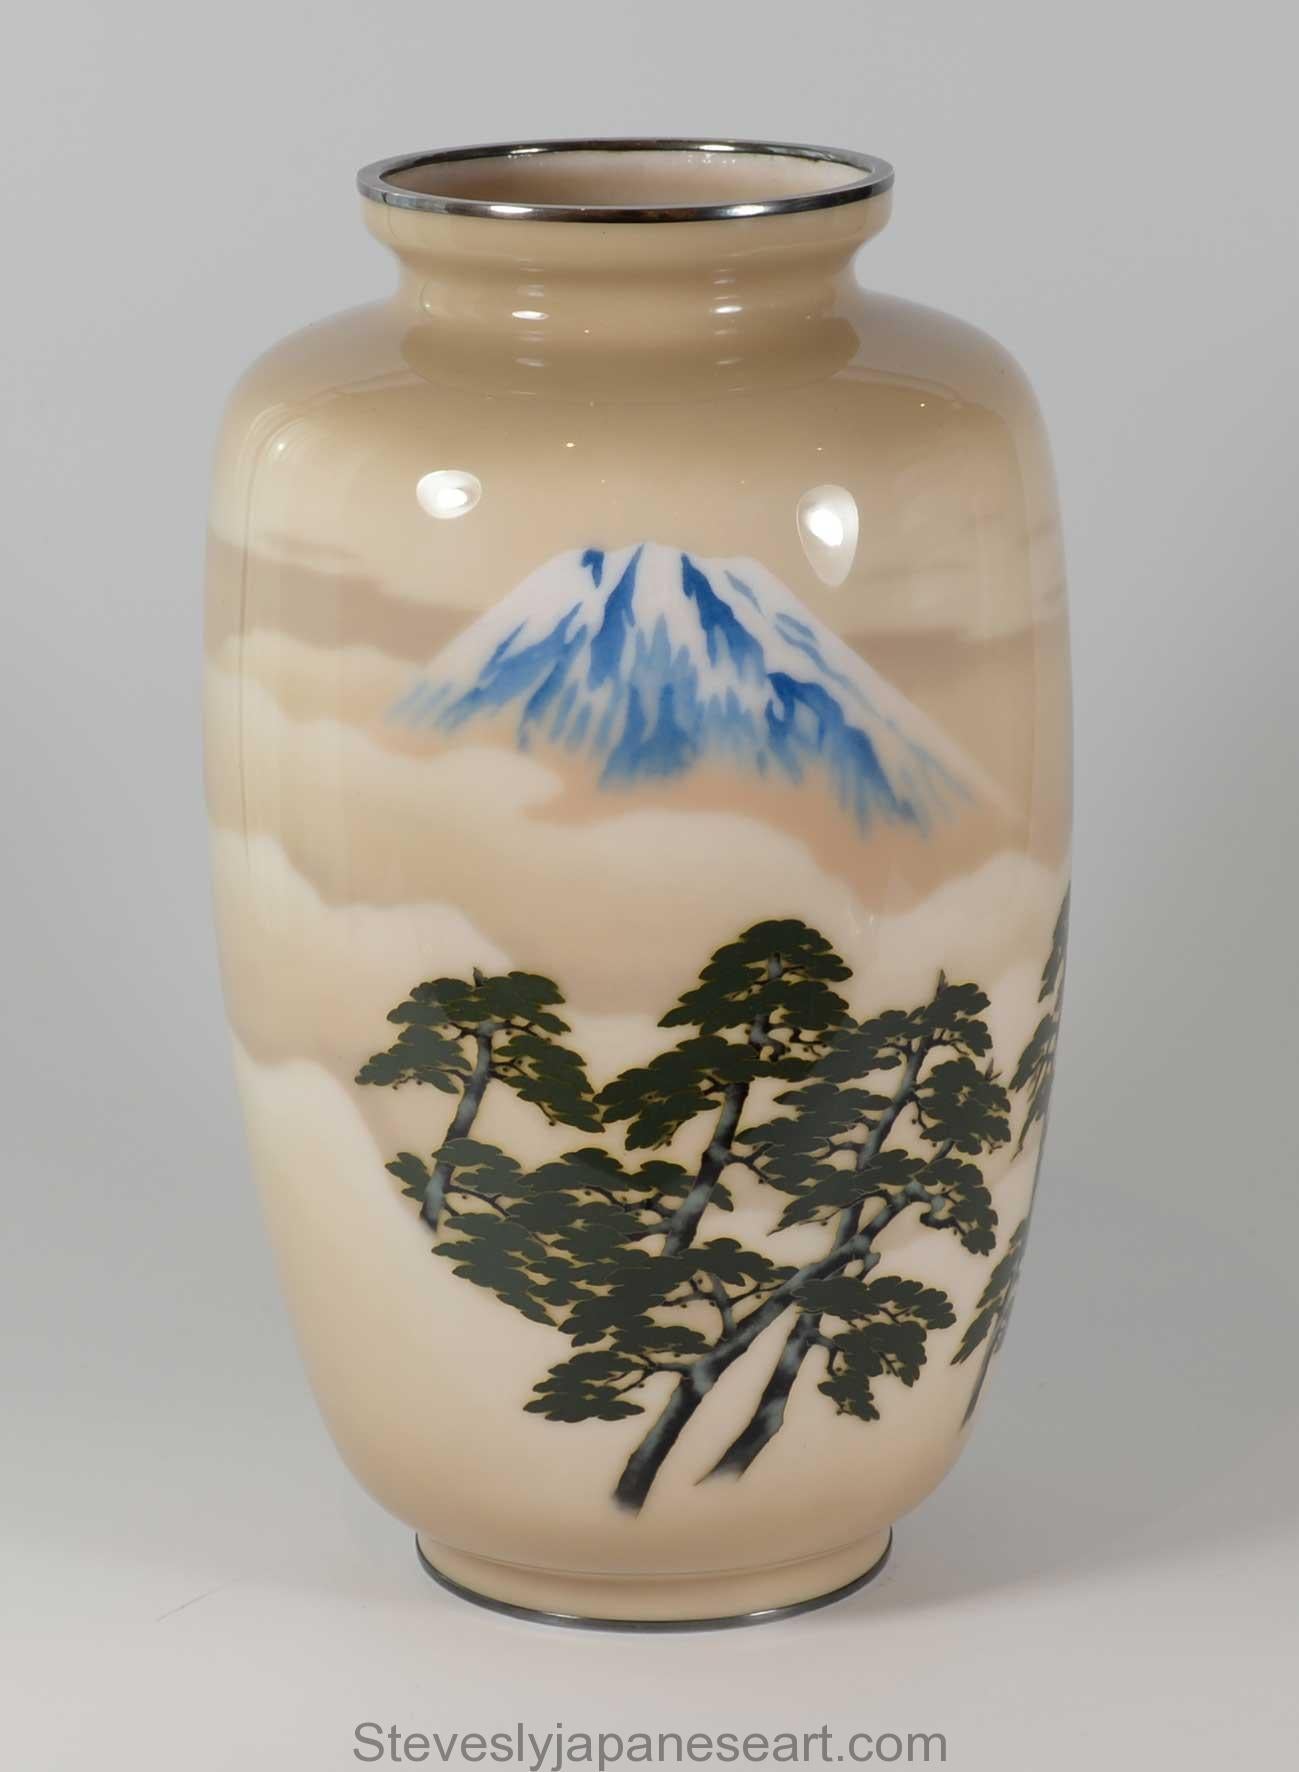 Dans le cadre de notre collection d'œuvres d'art japonaises, nous sommes ravis d'offrir ce grand vase cloisonné de la période Taisho 1912-1926, vers les années 1920, de la société Ando Jubei. Ce vase de grande qualité représente une scène